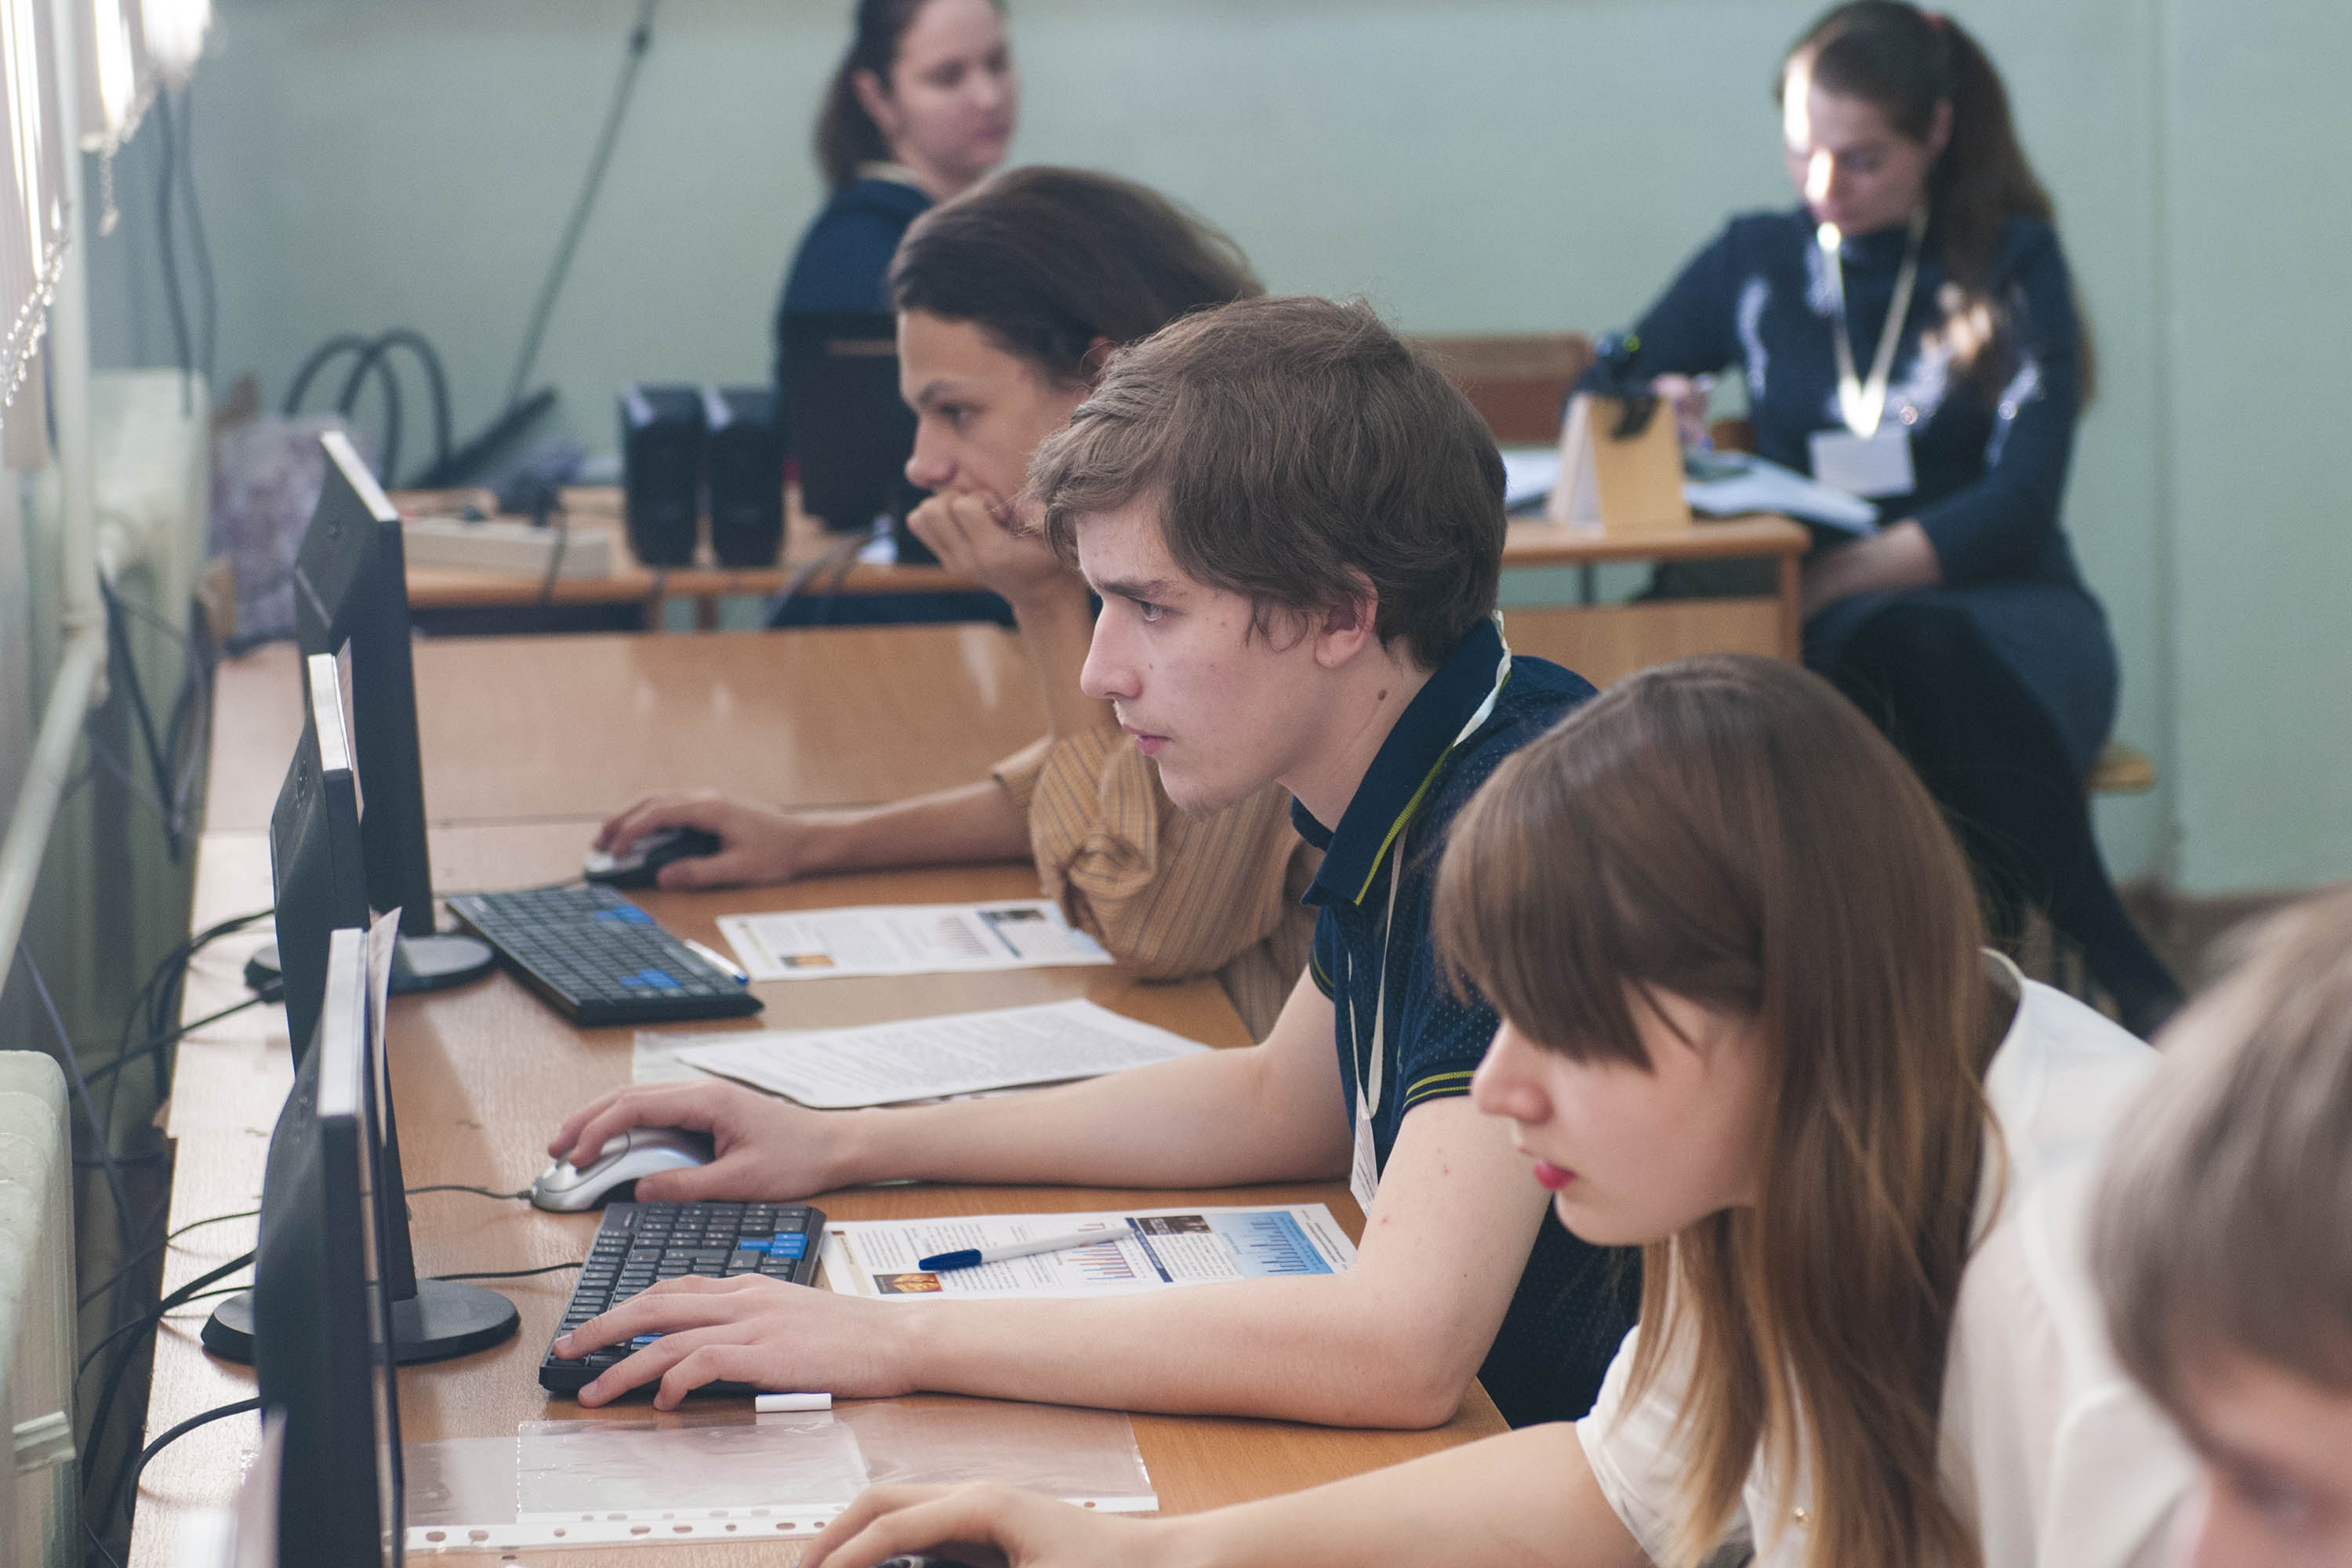 Техникумы и колледжи Кузбасса готовы предоставить более 14 тысяч бюджетных мест для абитуриентов 2020 года 